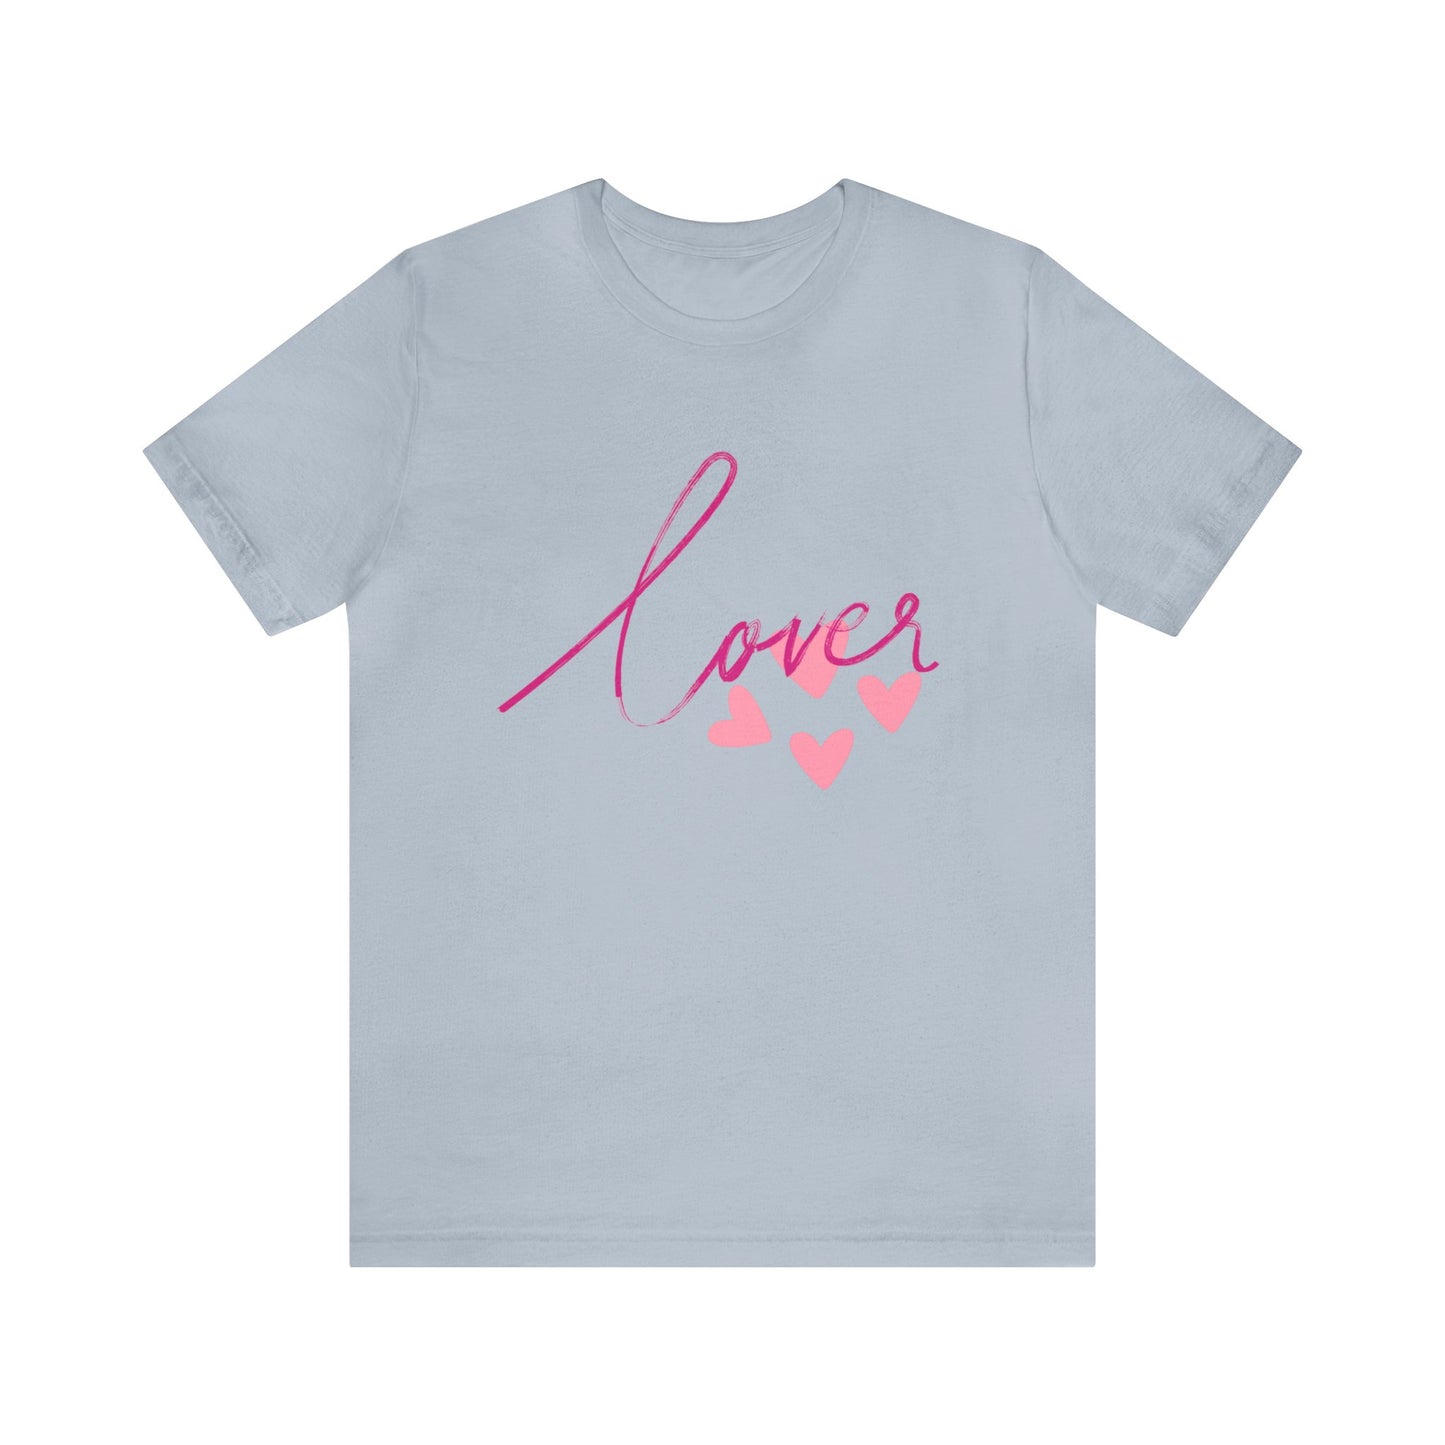 Lover shirt for him, lover shirt for boyfriend, lover shirt for lover, lover shirt for girl friend, lover shirt for valentine day, T938